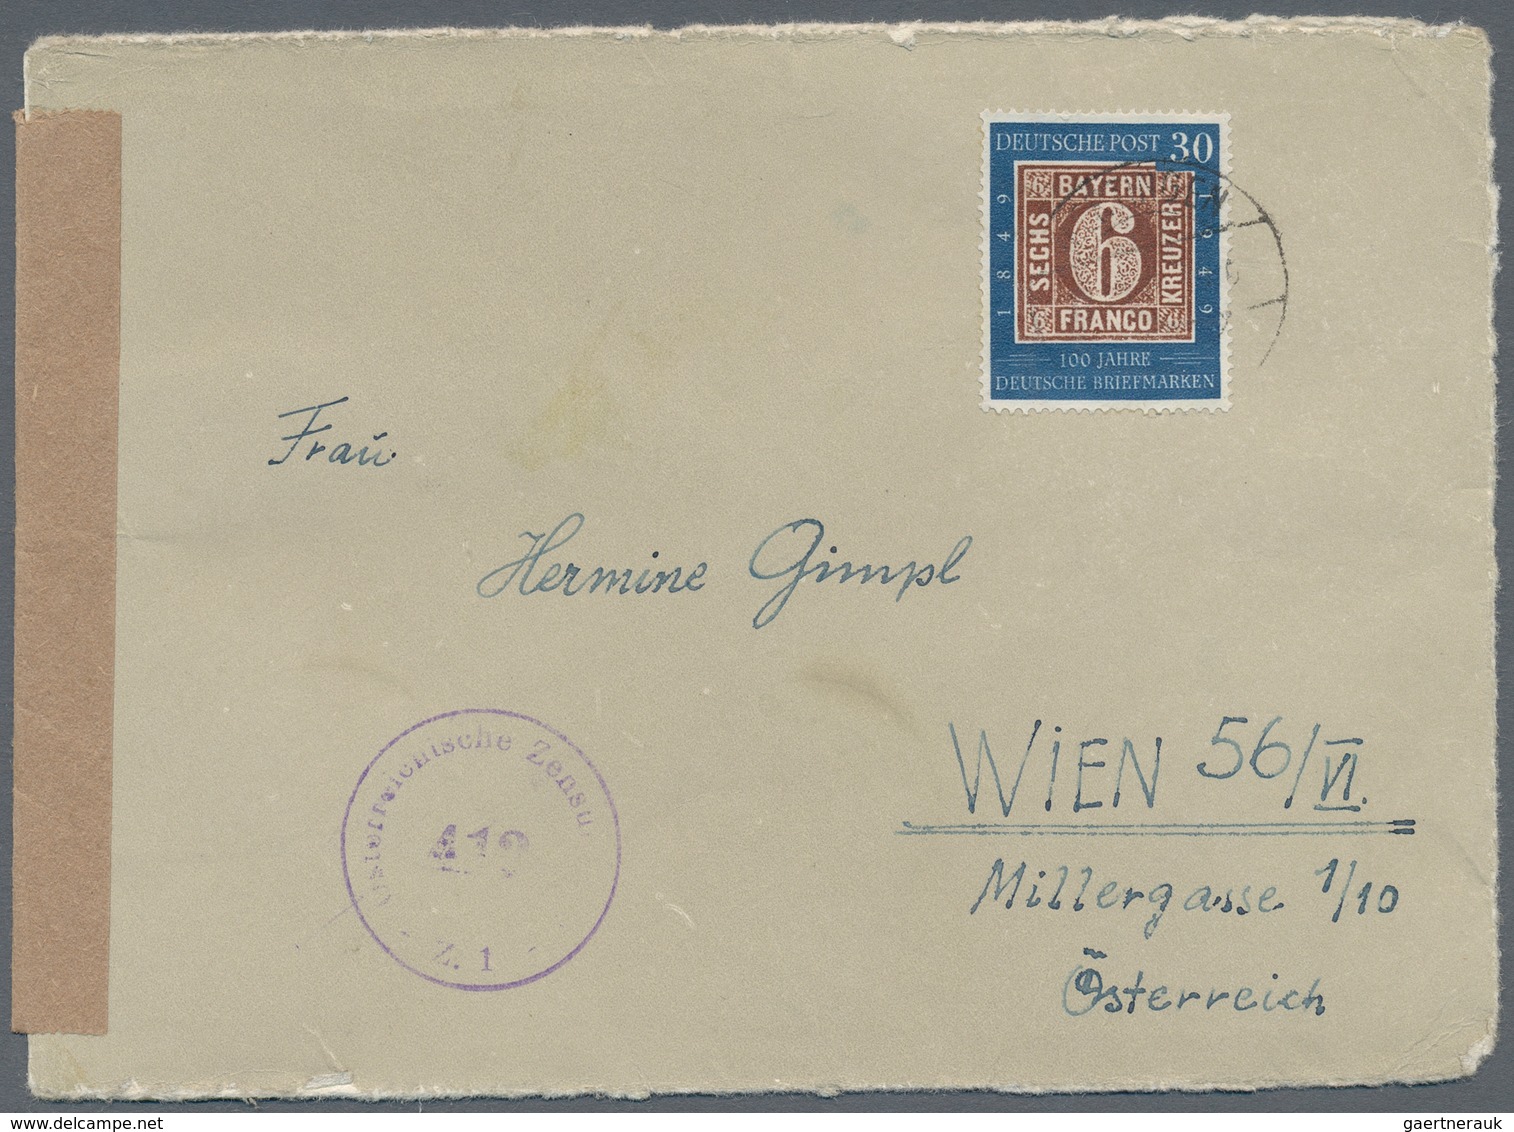 Bundesrepublik Deutschland: 1950/1960 (ca.), vielseitiger Posten von ca. 180 Briefen und Karten mit